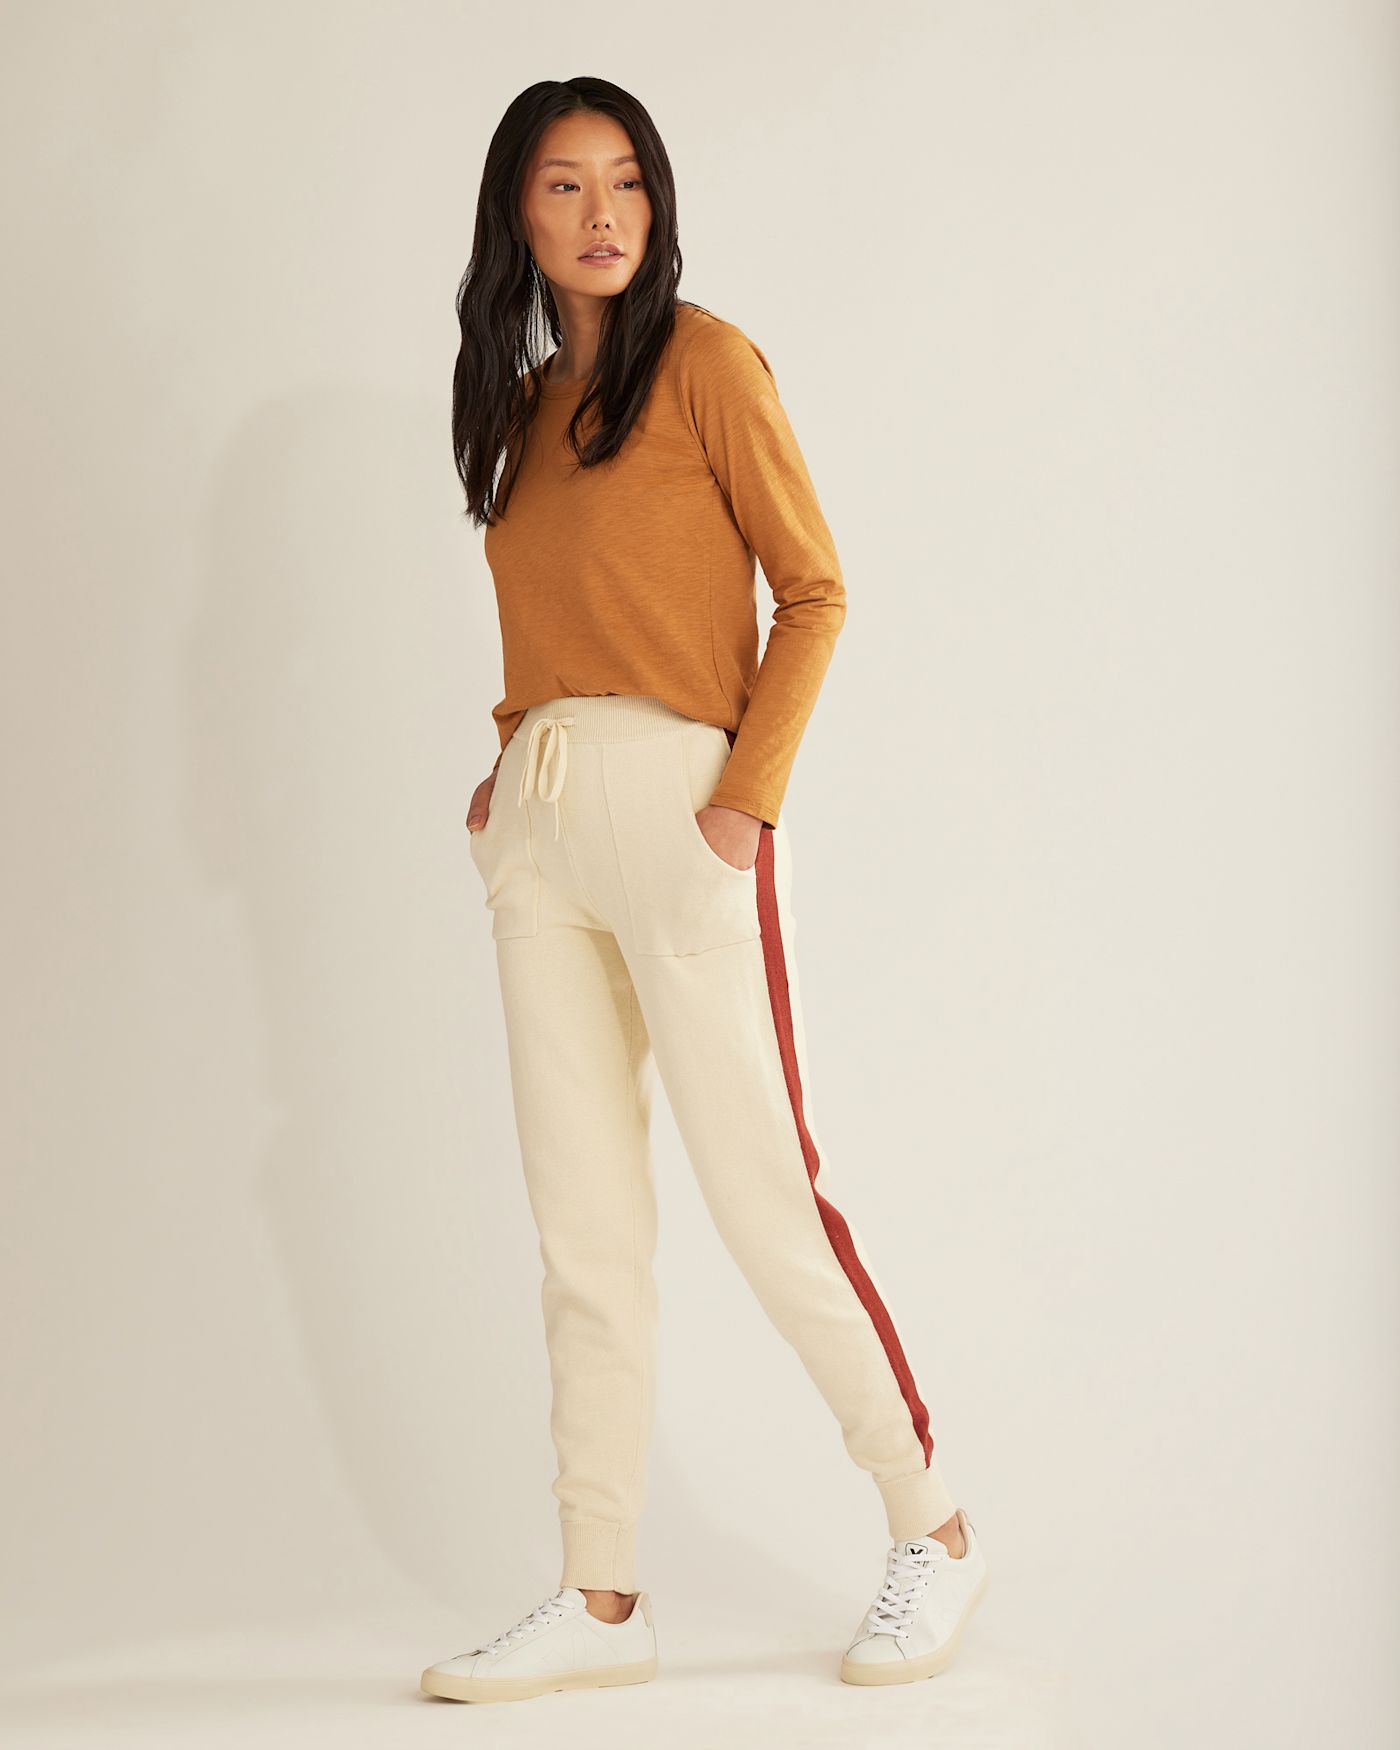 Lappen Fashion Women's Track Pants, Cotton Joggers